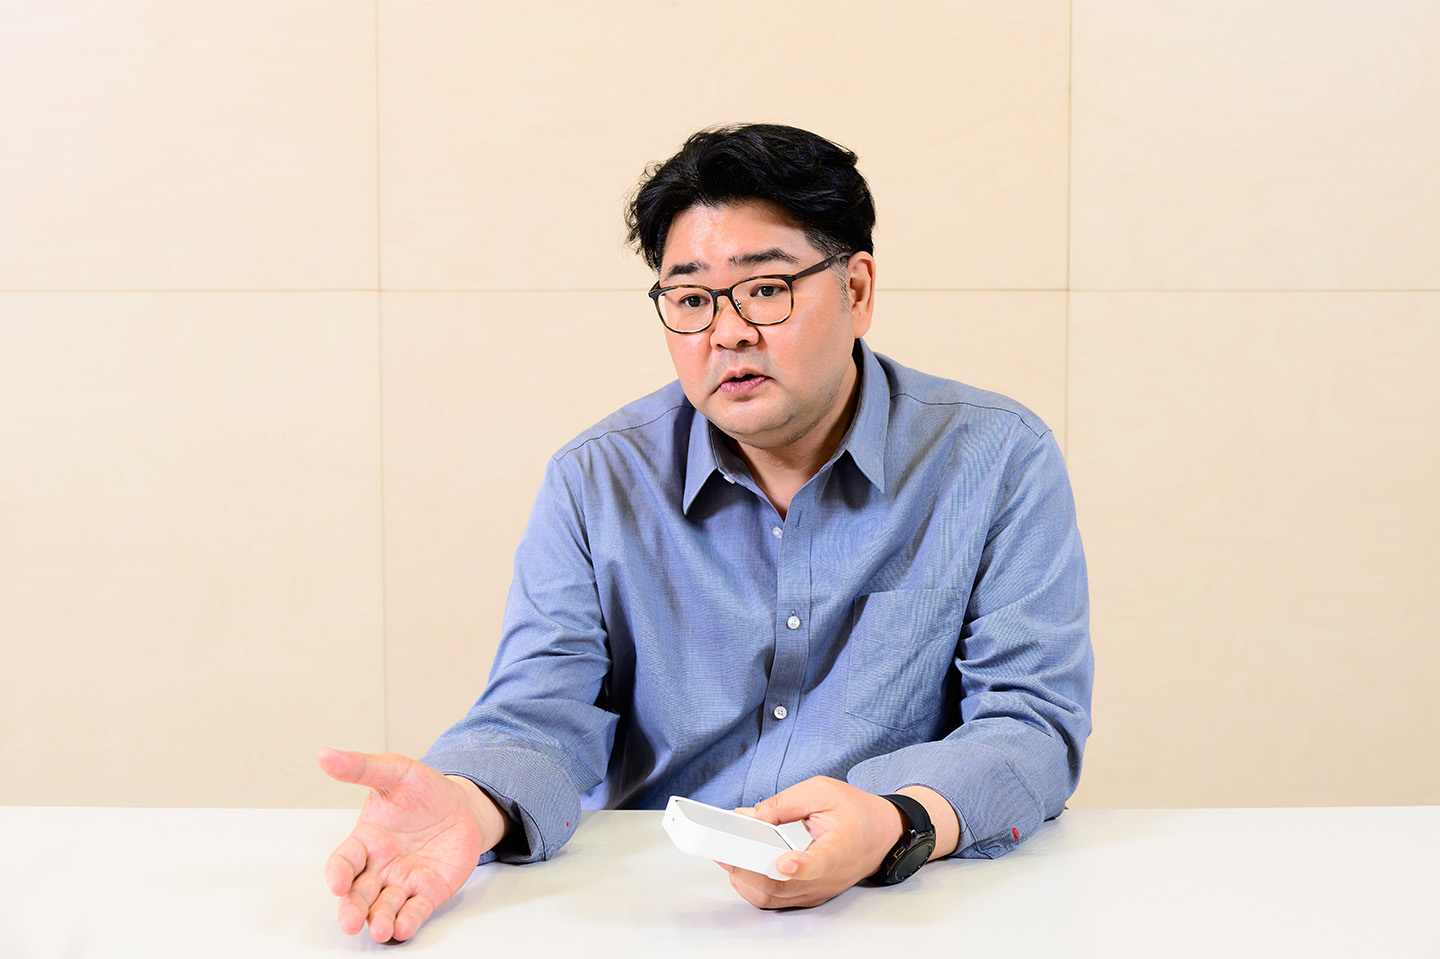 SmartThings Station Entrevista con el desarrollador Eugene Park y el planificador de productos Kiyoung Kwon